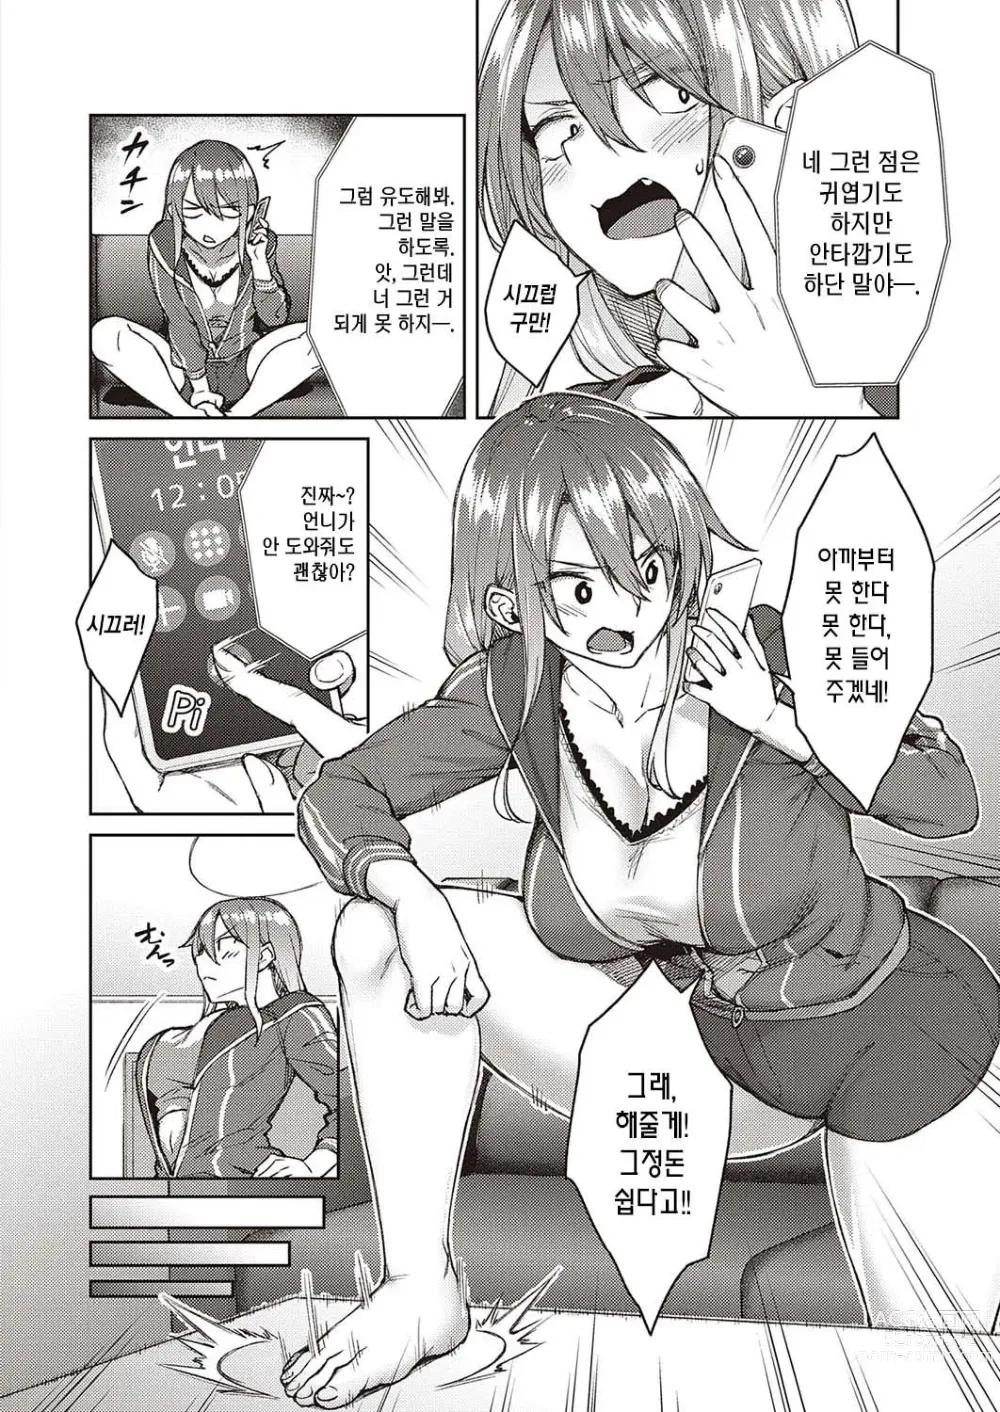 Page 7 of manga Haruiro Kanojo + Extra